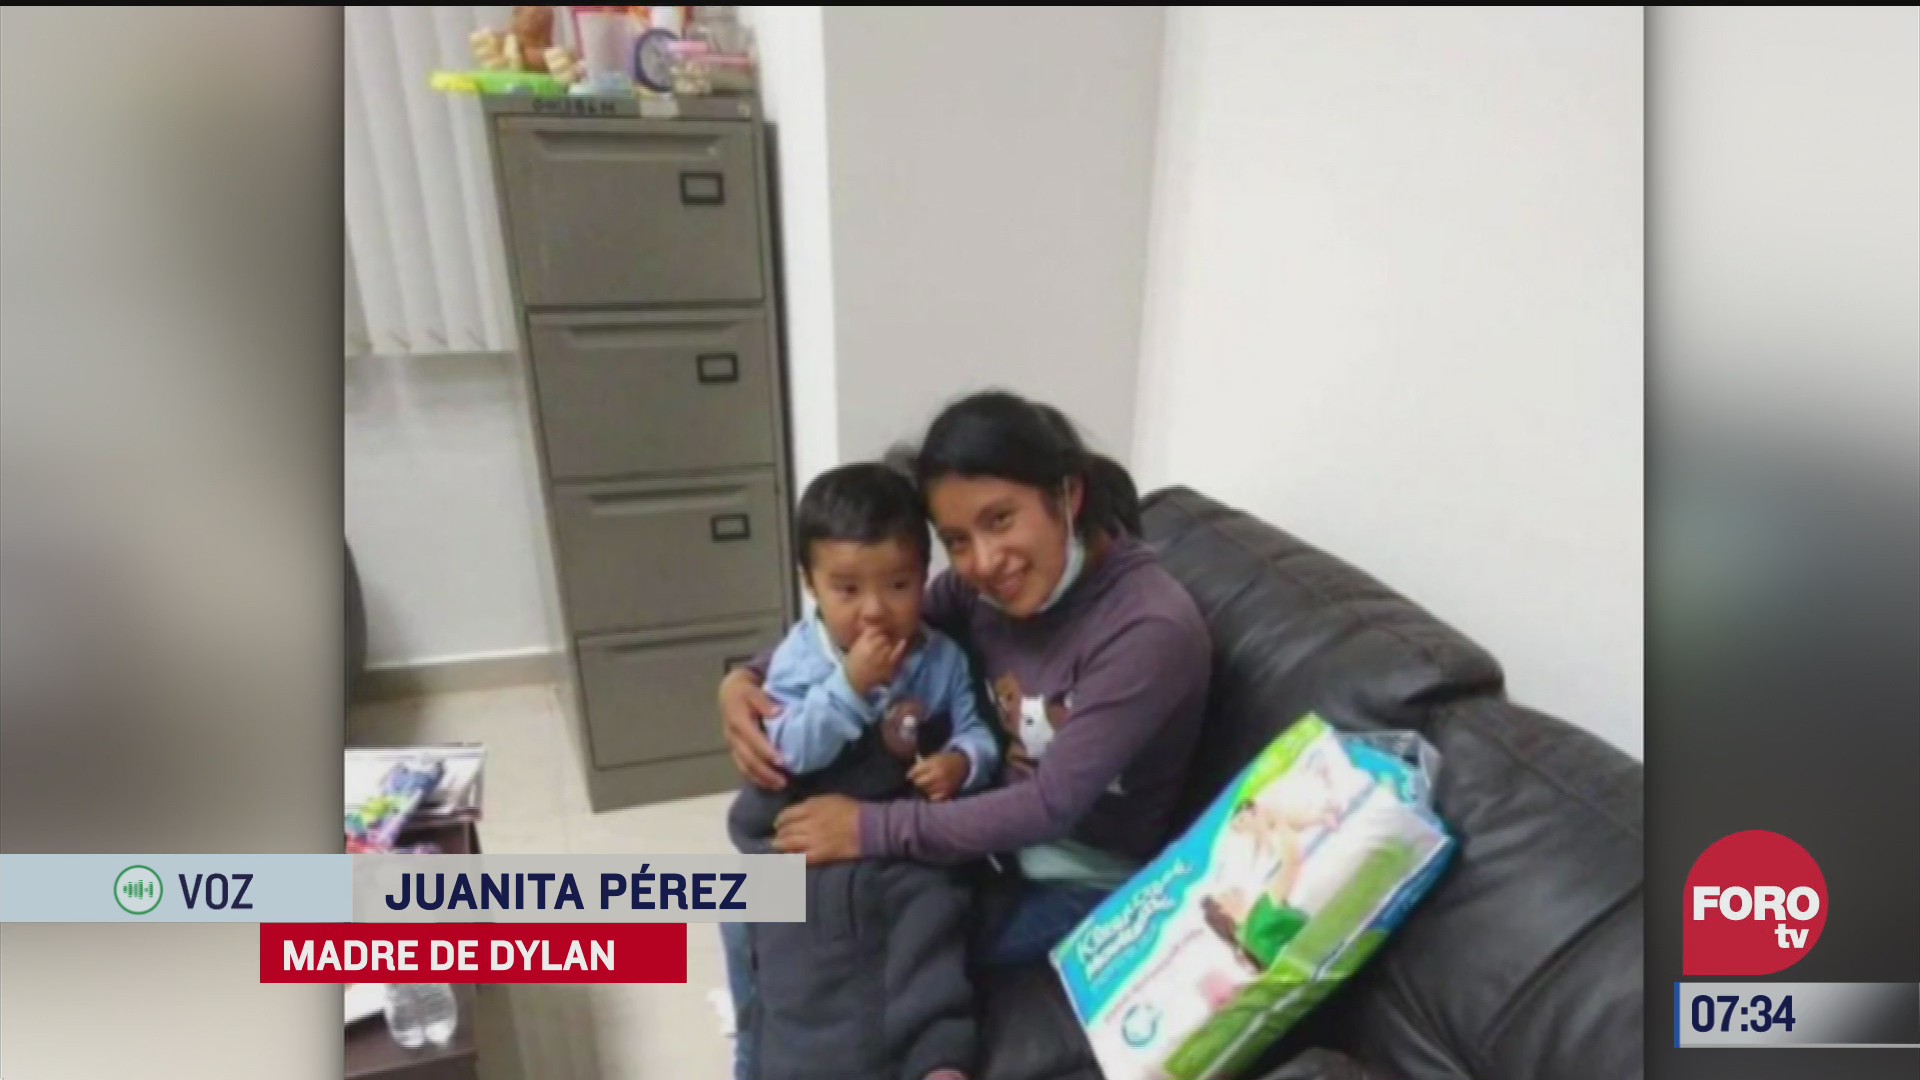 mi hijo fue rescatado en un operativo dice juanita madre de dylan